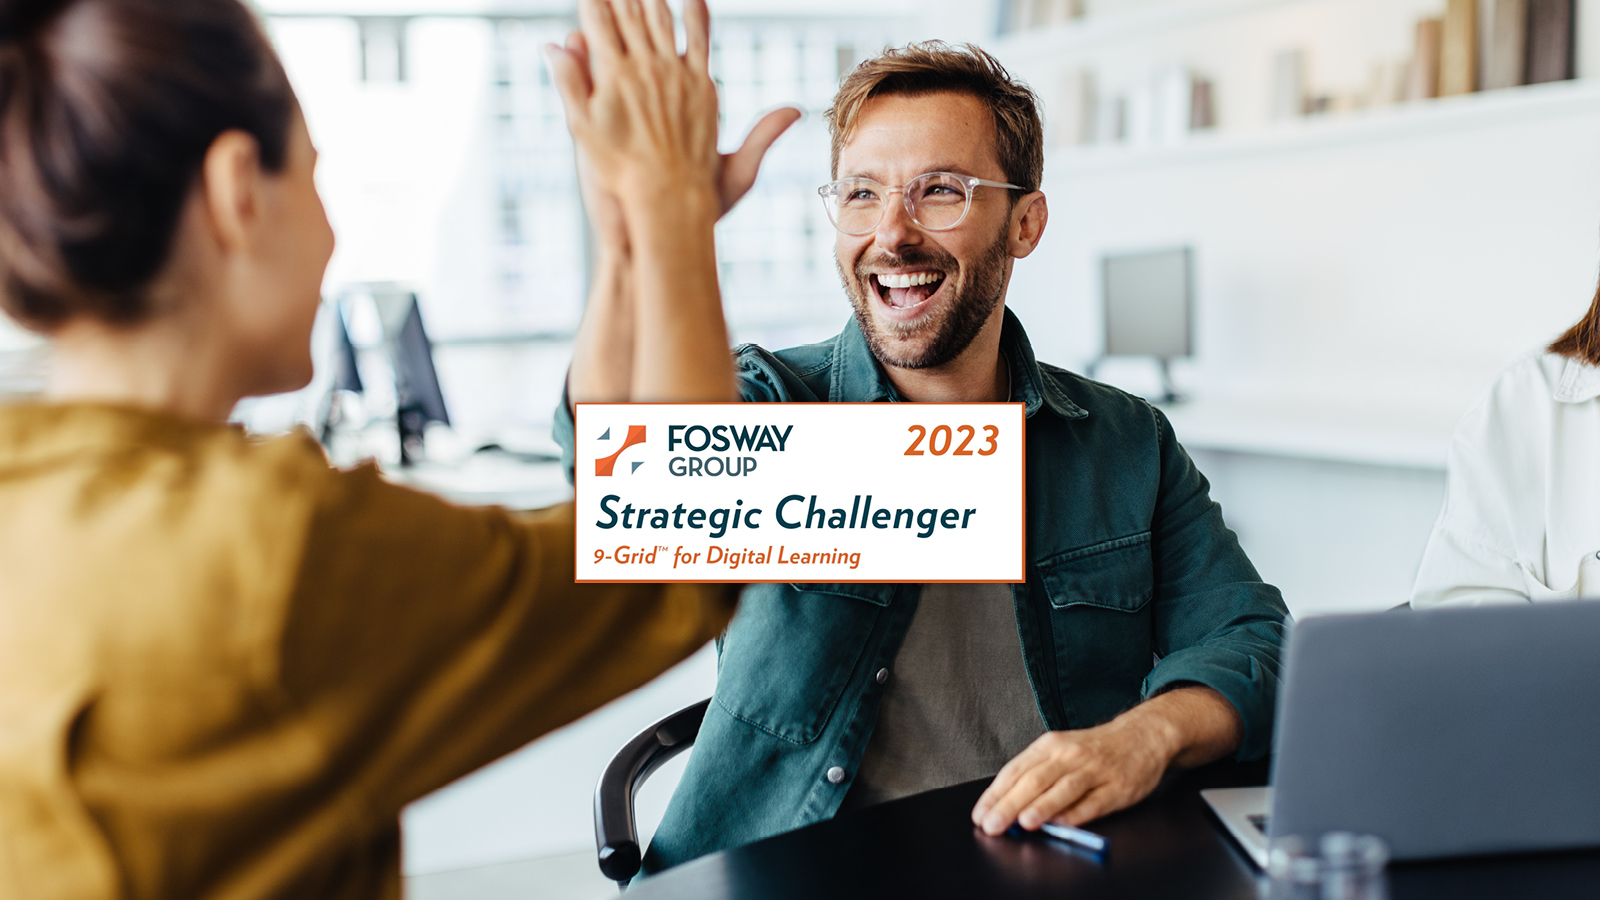 imc als Strategic Challenger im Fosway 9-Grid 2023 für Digital Learning ausgezeichnet